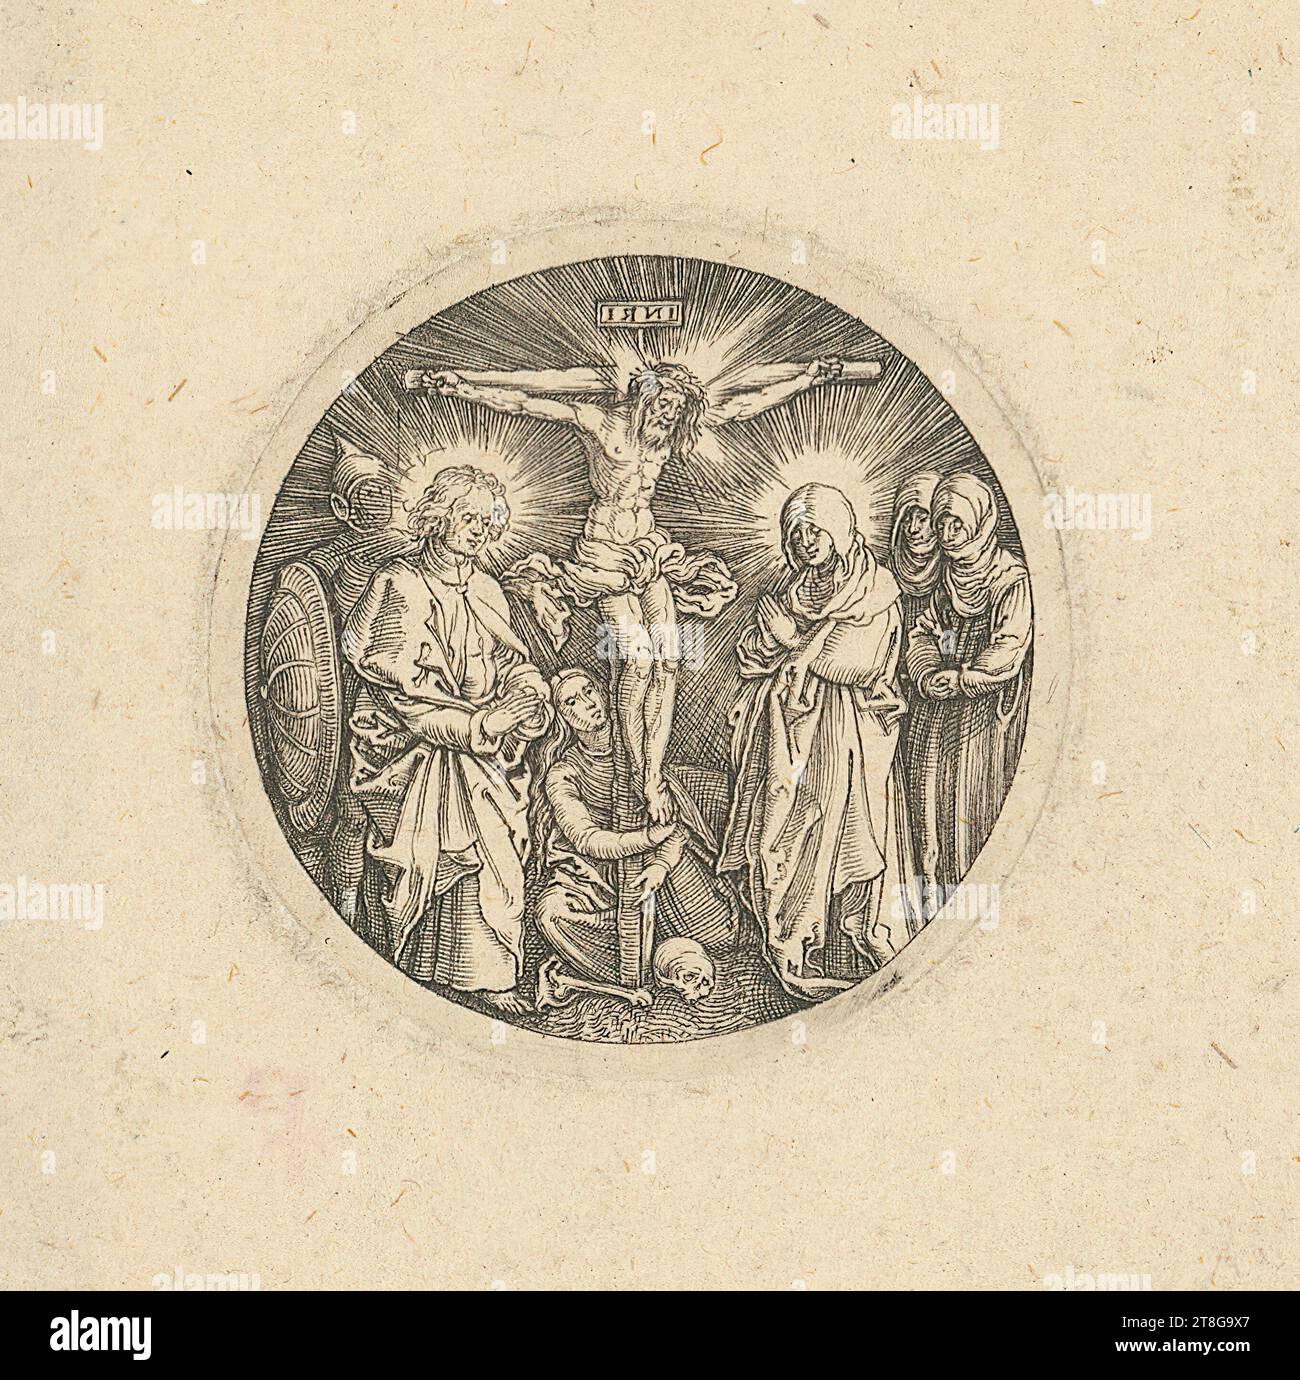 Anonyme (date inconnue), graveur Albrecht Dürer (1471 - 1528), copie d'après, petit bouton d'épée crucifixion de l'empereur Maximilien, origine du support d'impression : circa 1600 - circa 1700 17, gravure sur cuivre sur papier vergé, taille de la feuille : 6,0 x 6,2 cm diamètre: 3,9 cm (platemark)' inscrit en haut au centre sur la croix 'i ? ? I. Banque D'Images